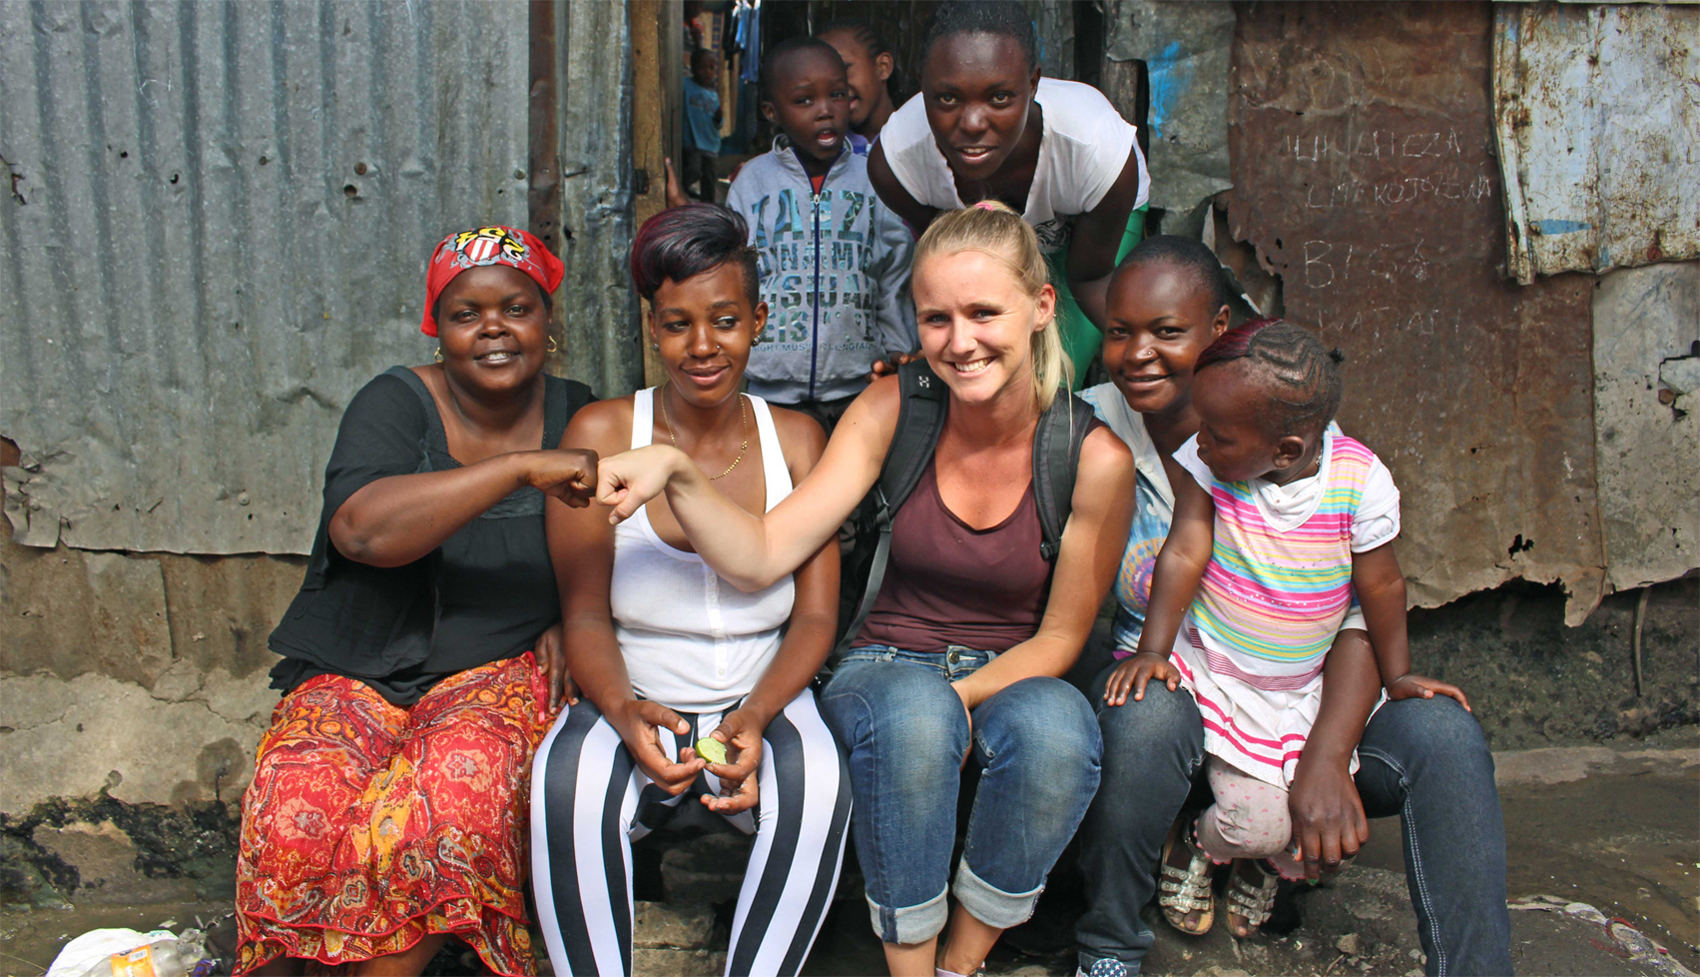 En pige fra et dansk universitet sidder sammen med en gruppe smilende, lokale mennesker i Kenya. Foto: Nordea-fonden